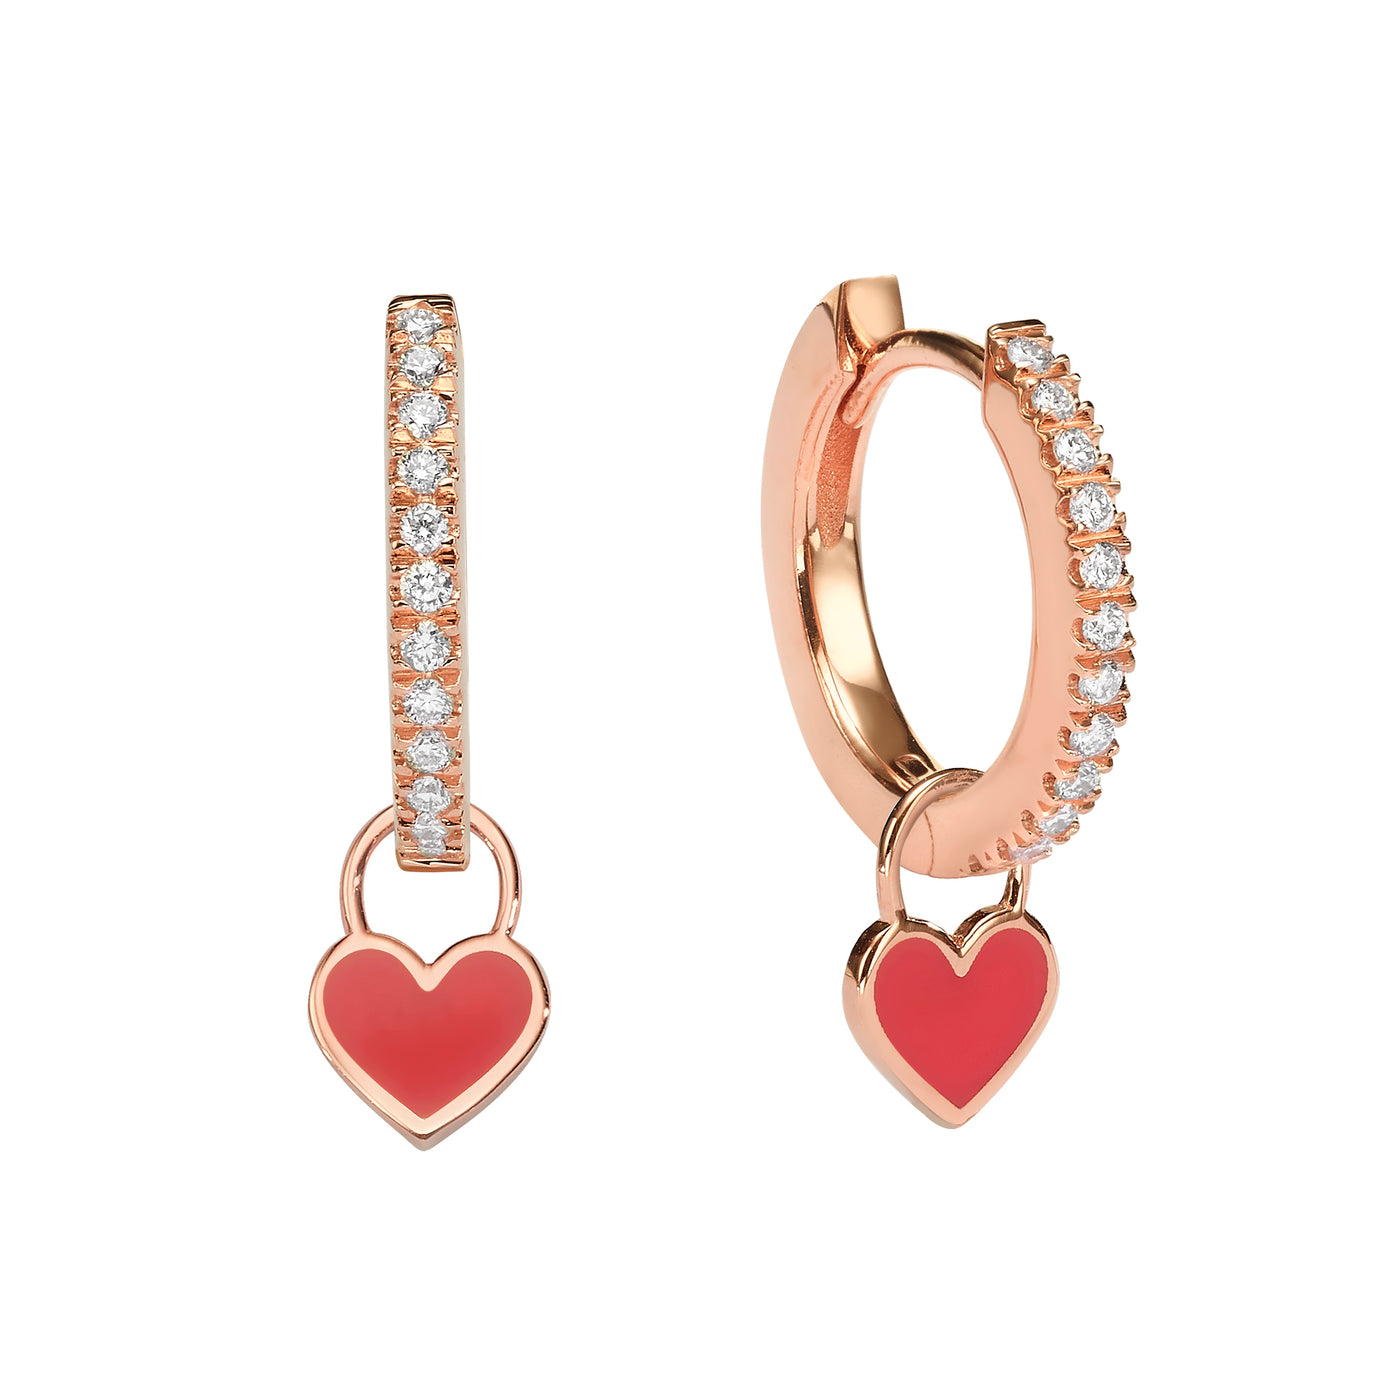 Midi Gypsy hearts earrings